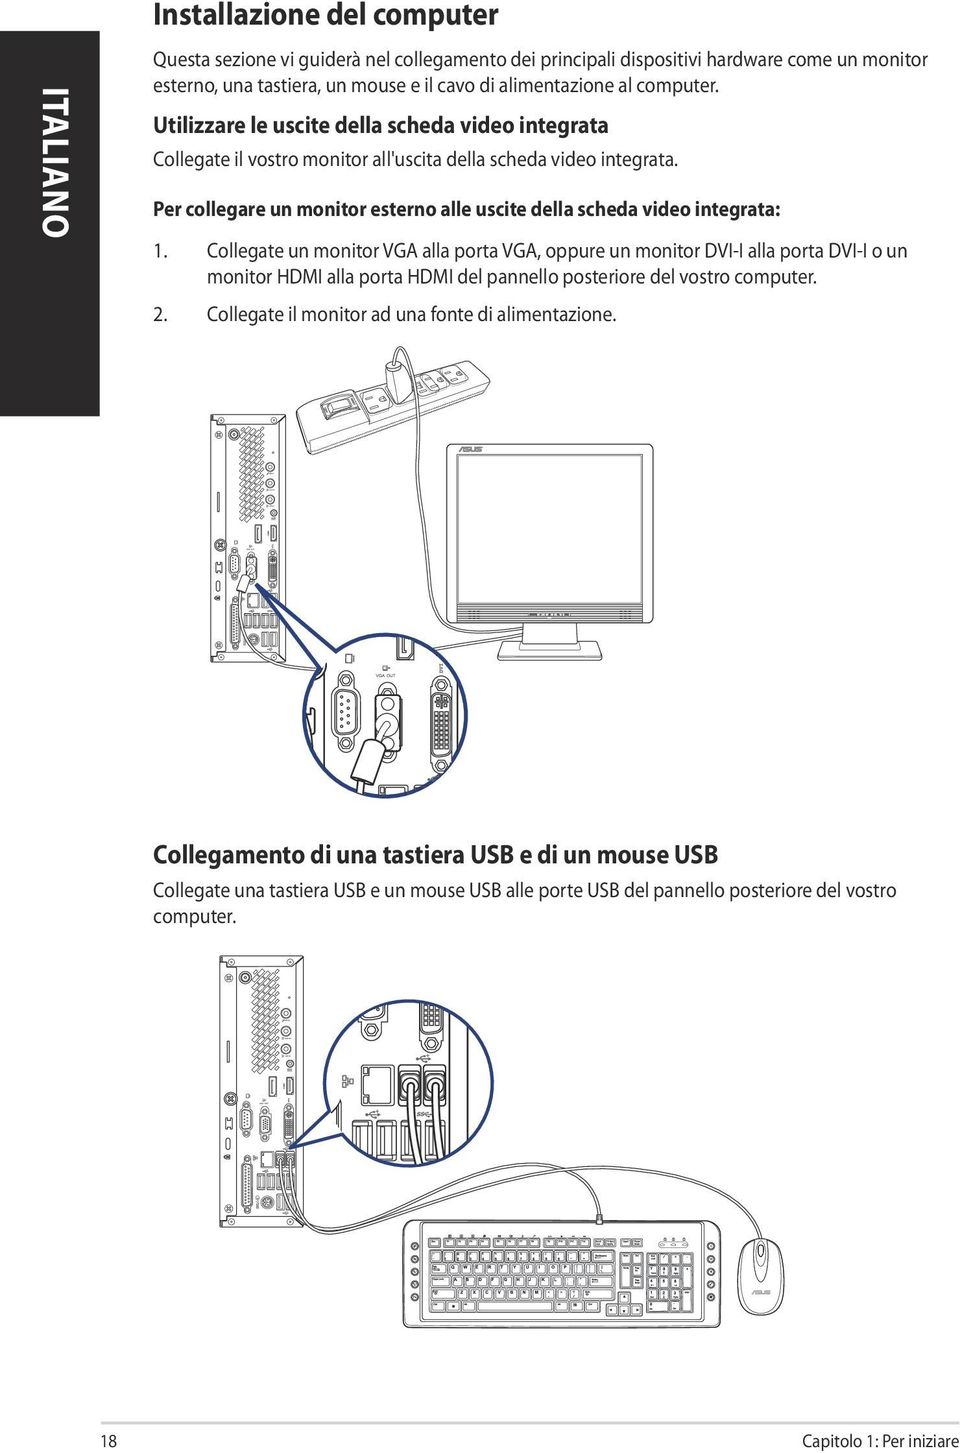 Collegate un monitor VGA alla porta VGA, oppure un monitor DVI-I alla porta DVI-I o un monitor HDMI alla porta HDMI del pannello posteriore del vostro computer. 2.